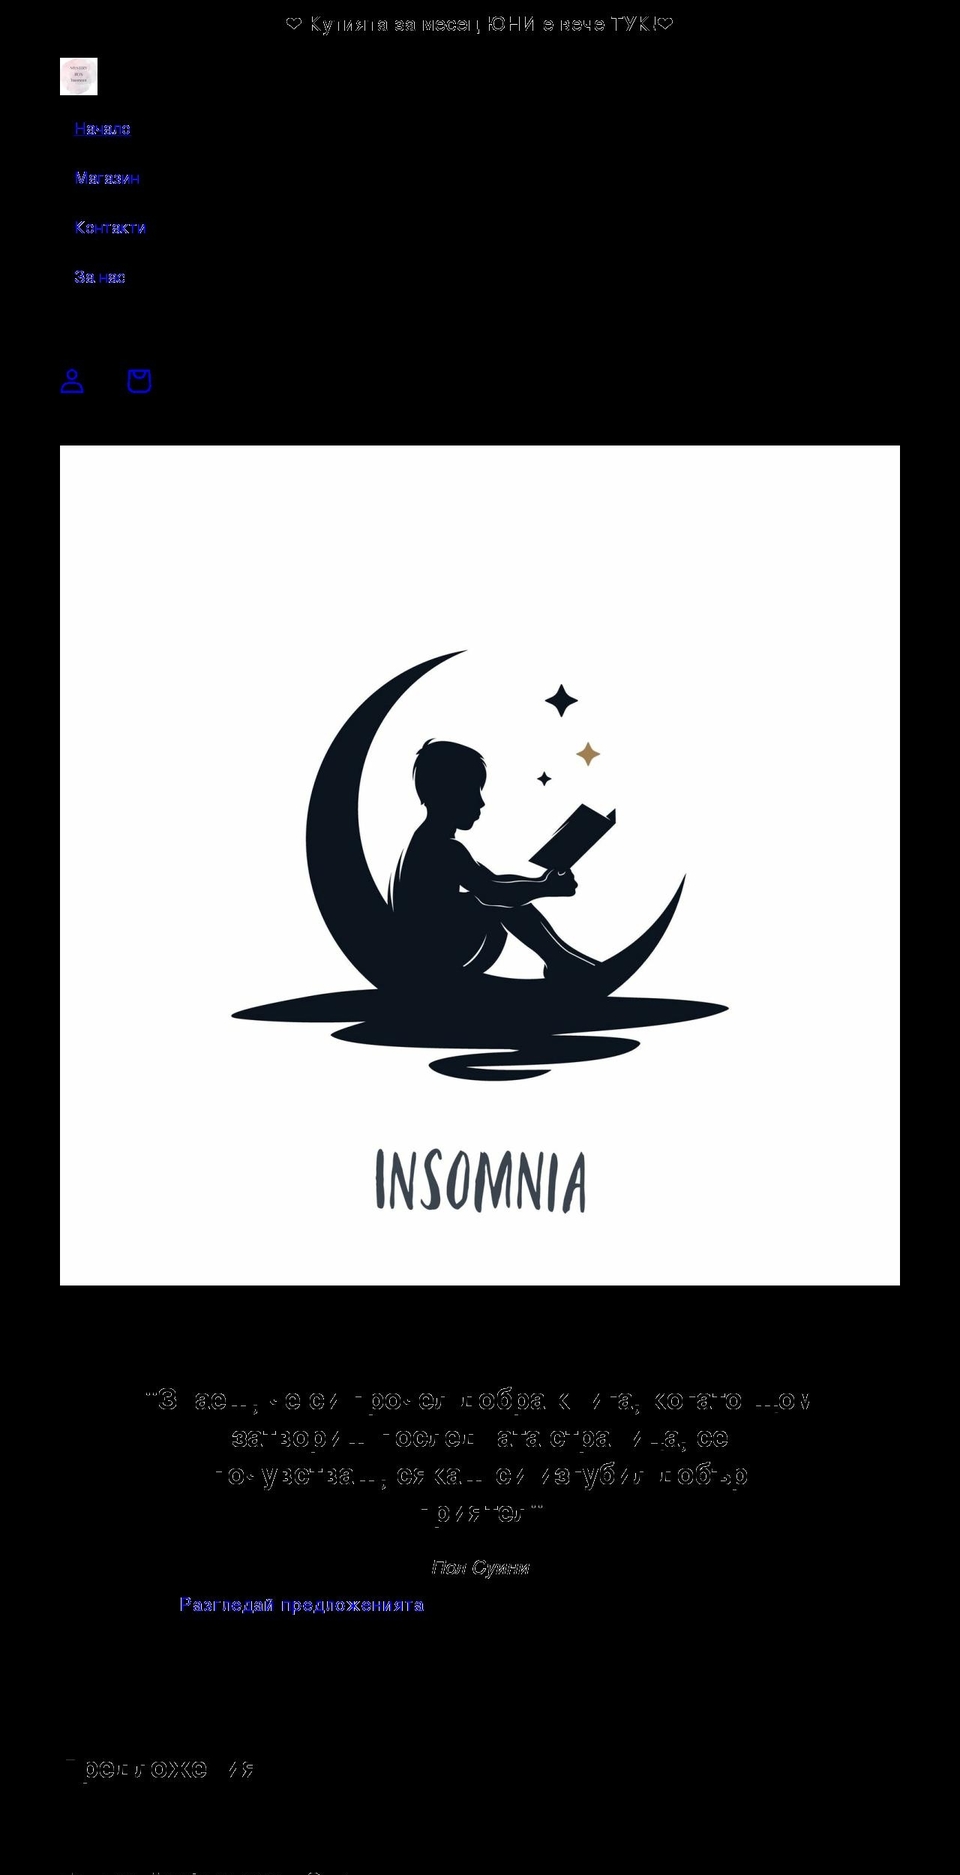 insomniabooks.com shopify website screenshot